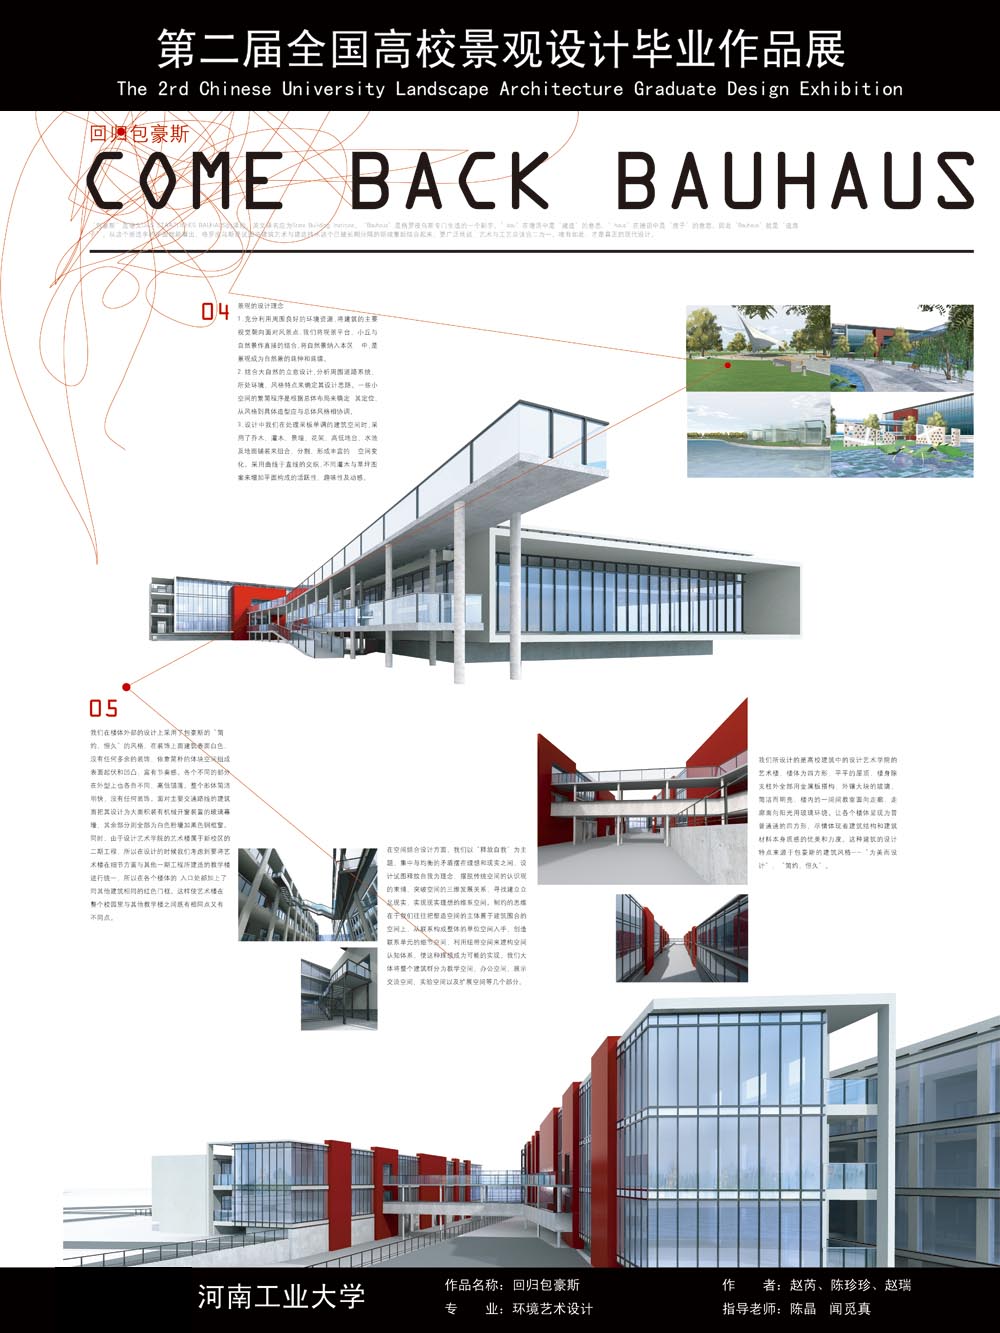 回归包豪斯——河南工业大学艺术楼建筑及景观设计-2